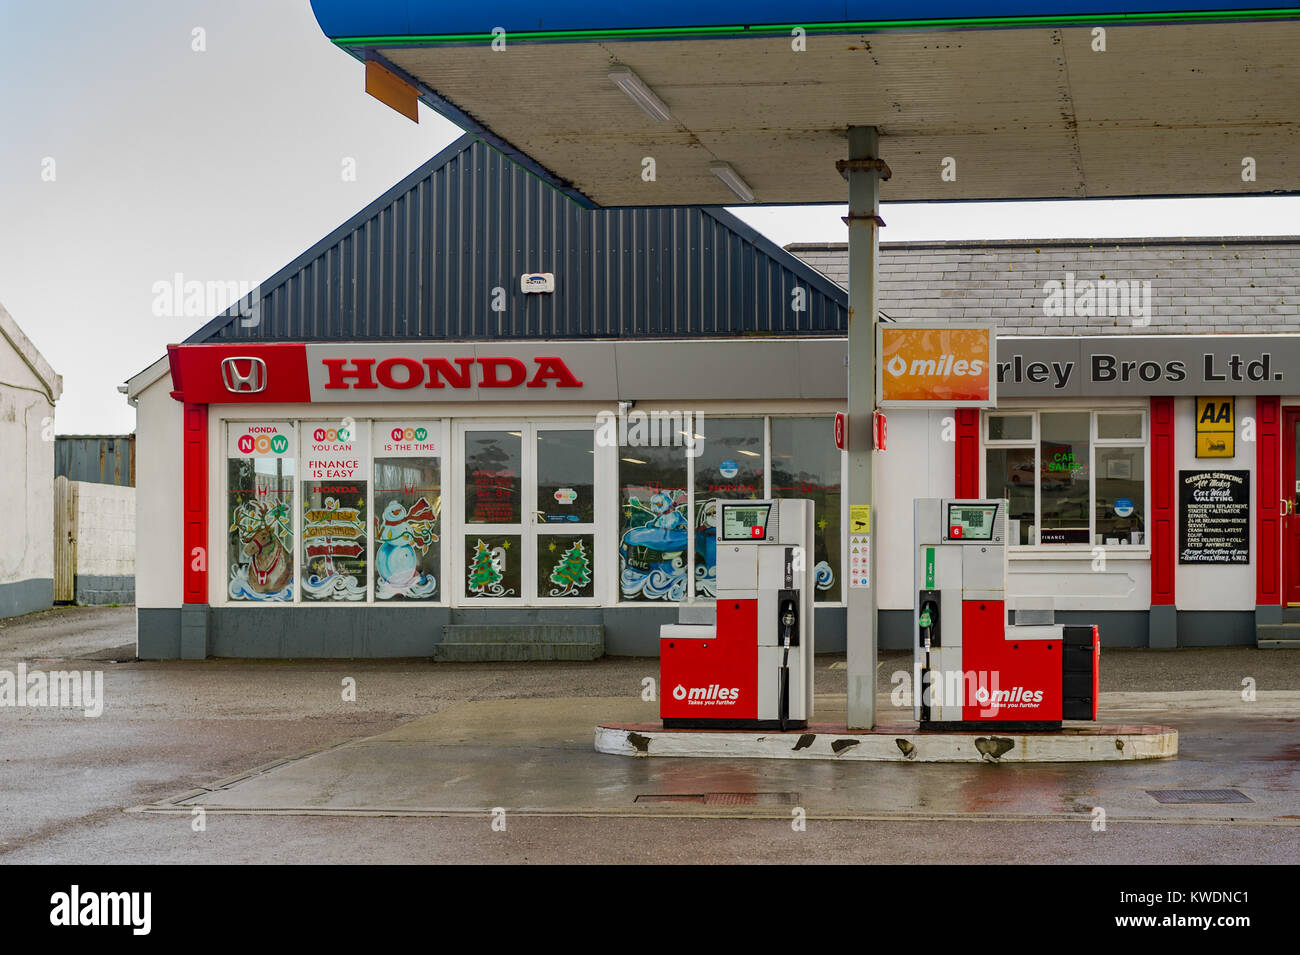 Vente de garage Honda à essence et diesel Skibbereen, comté de Cork, Irlande. Banque D'Images